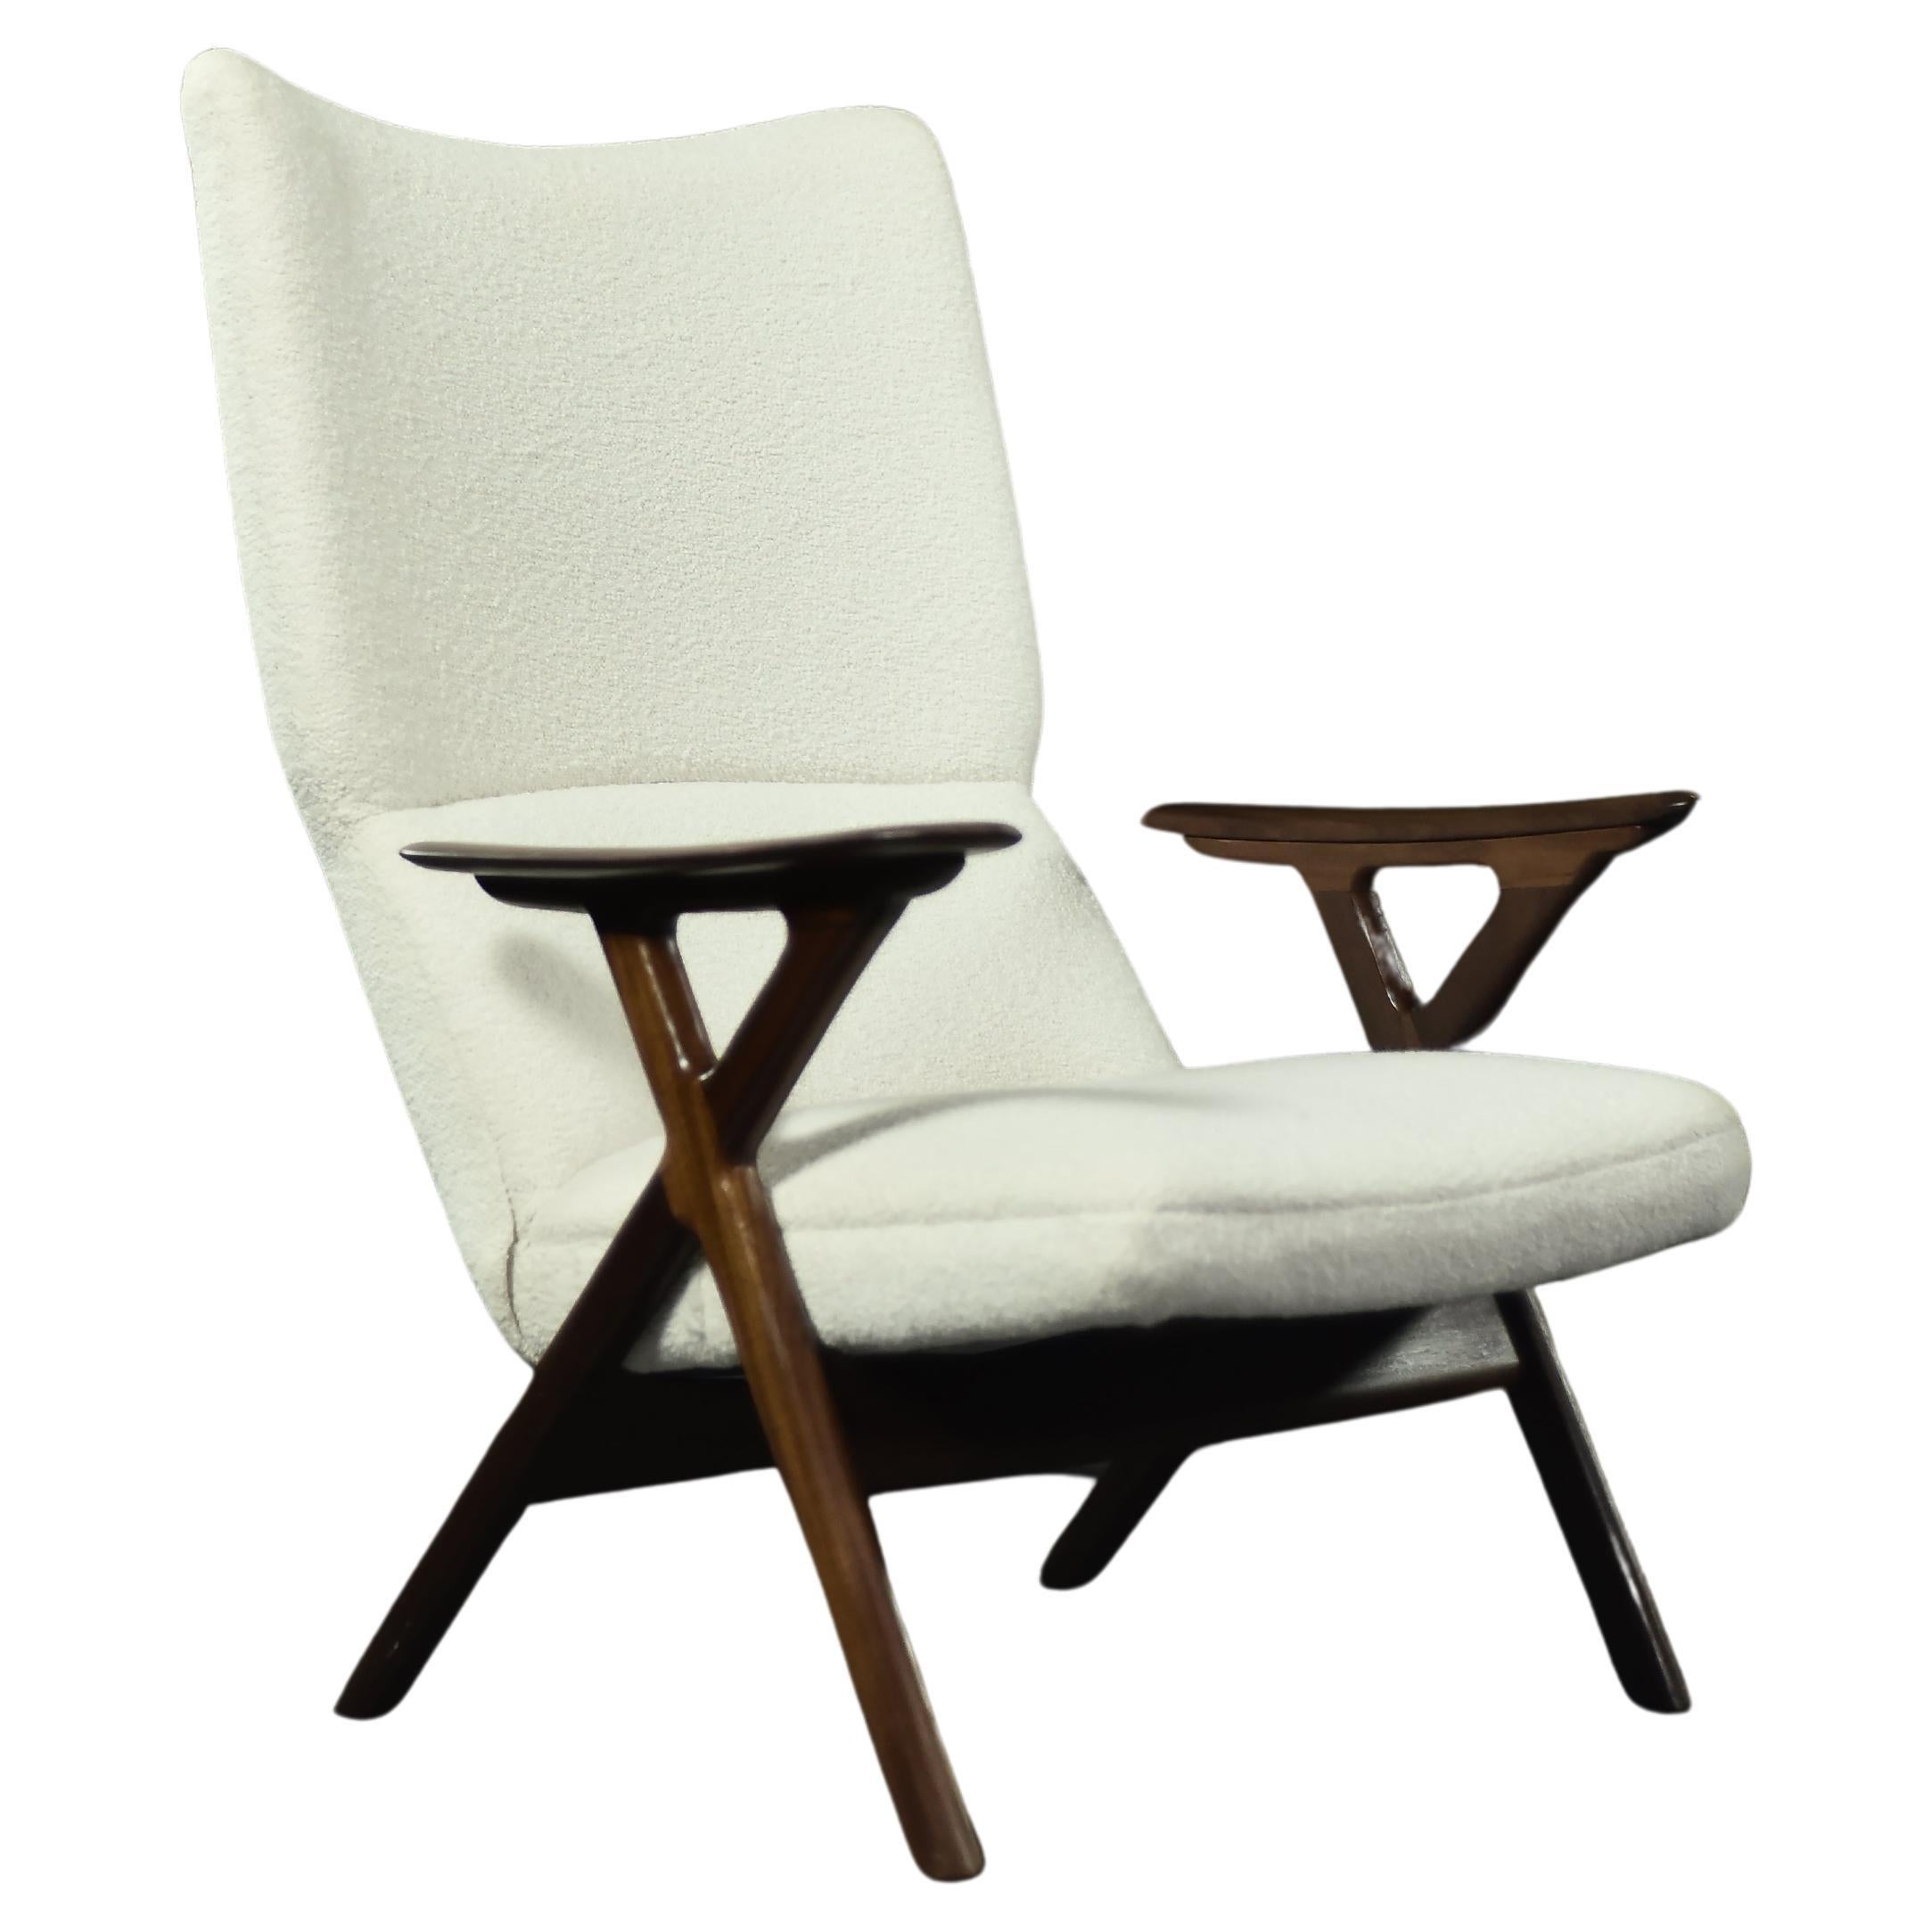 Chaise longue norvégienne moderne du milieu du siècle dernier, en teck et tissu bouclé blanc